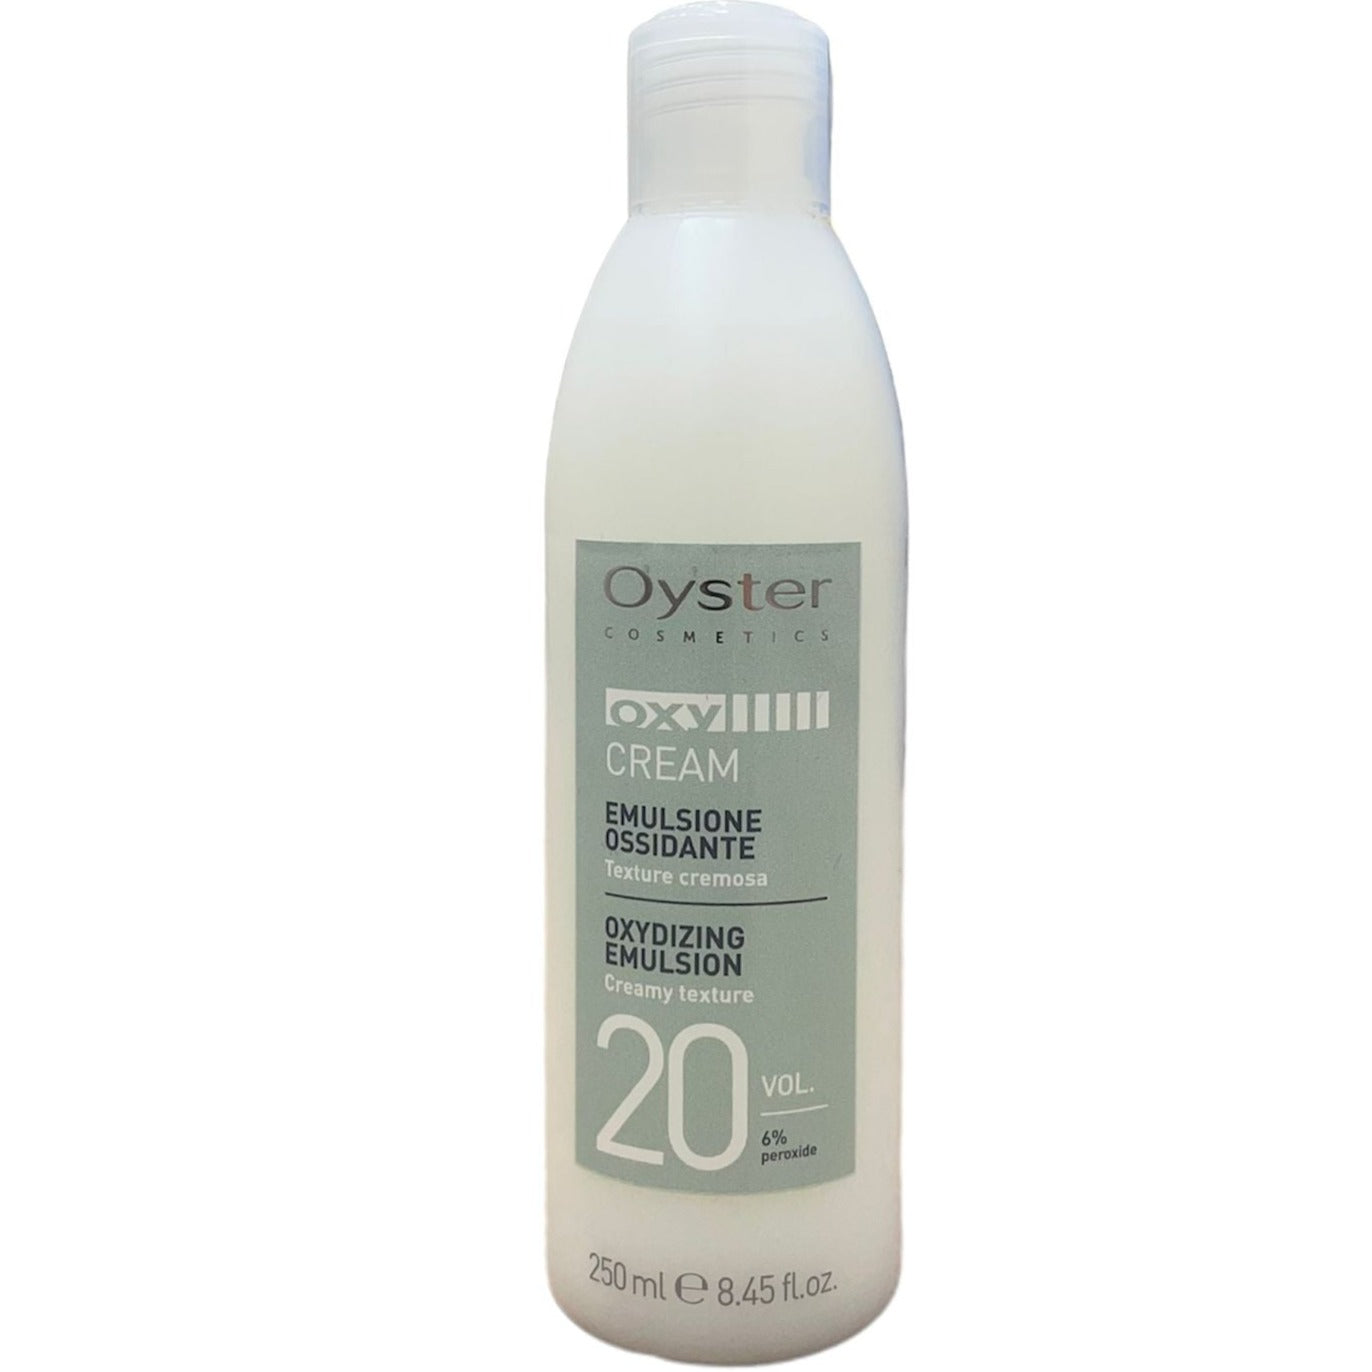 Oxidizing Emulsion 20 Vol. (6%) Oxy Cream Oyster